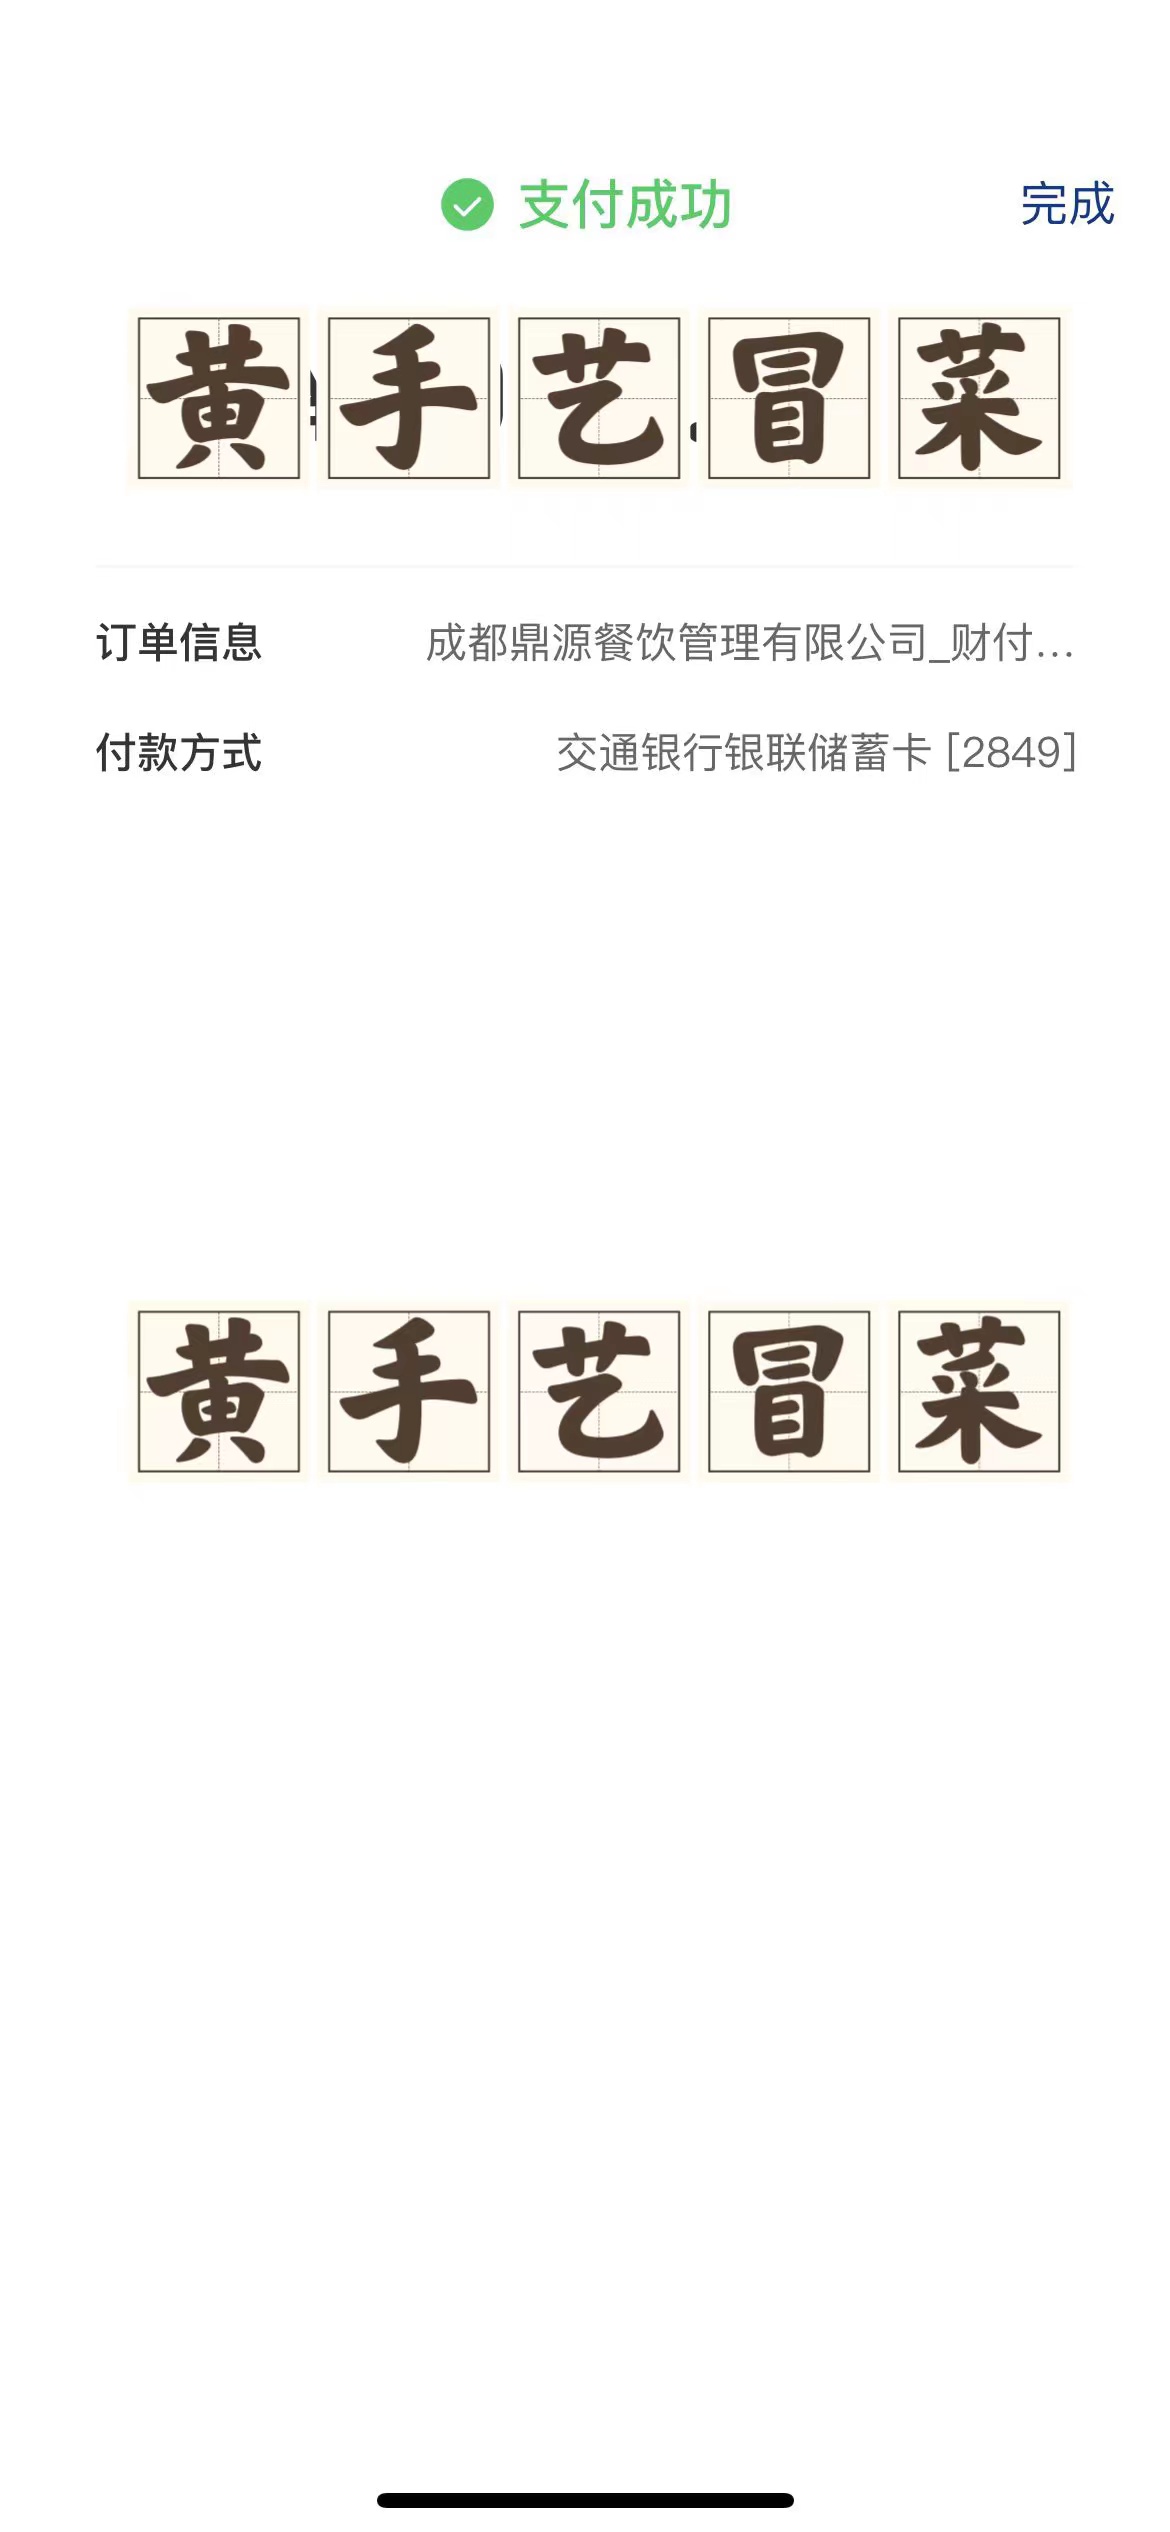 2023年3月7日 西藏八宿肖女士成功签约黄手艺冒菜